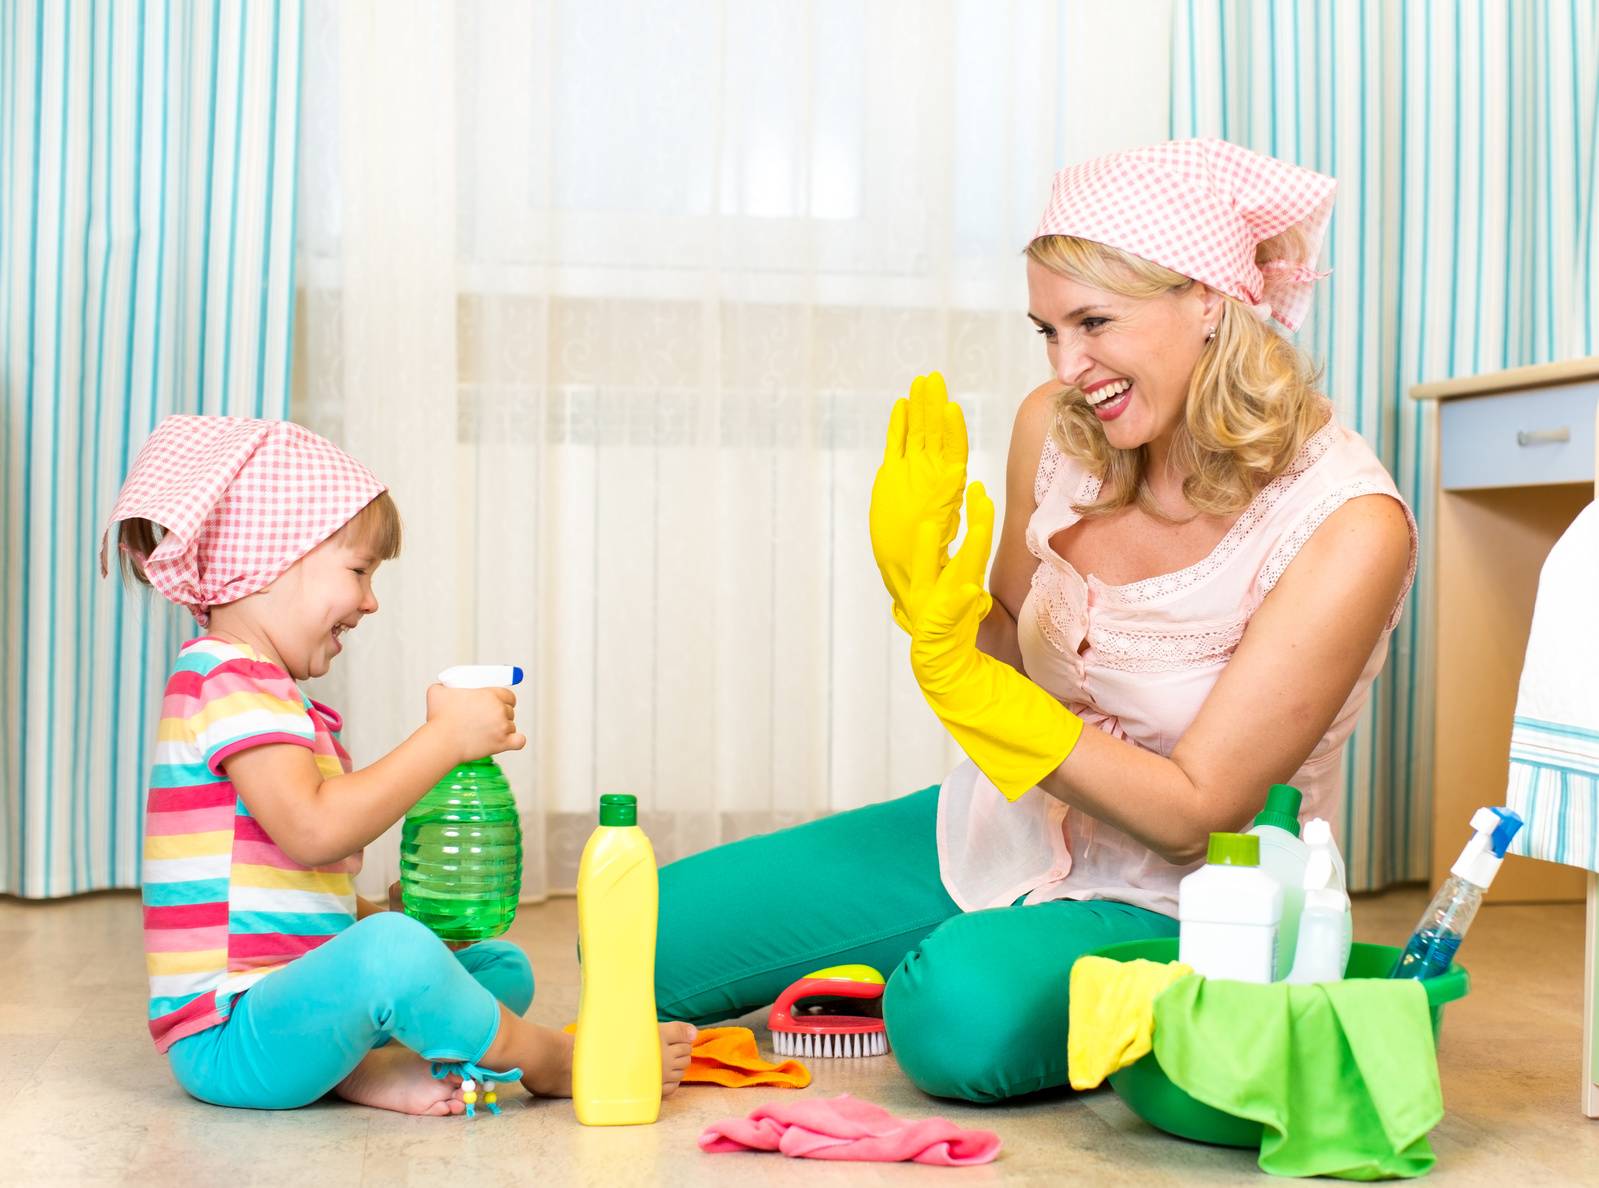 Какие обязанности по дому может выполнять ребенок, в соответствии с возрастом